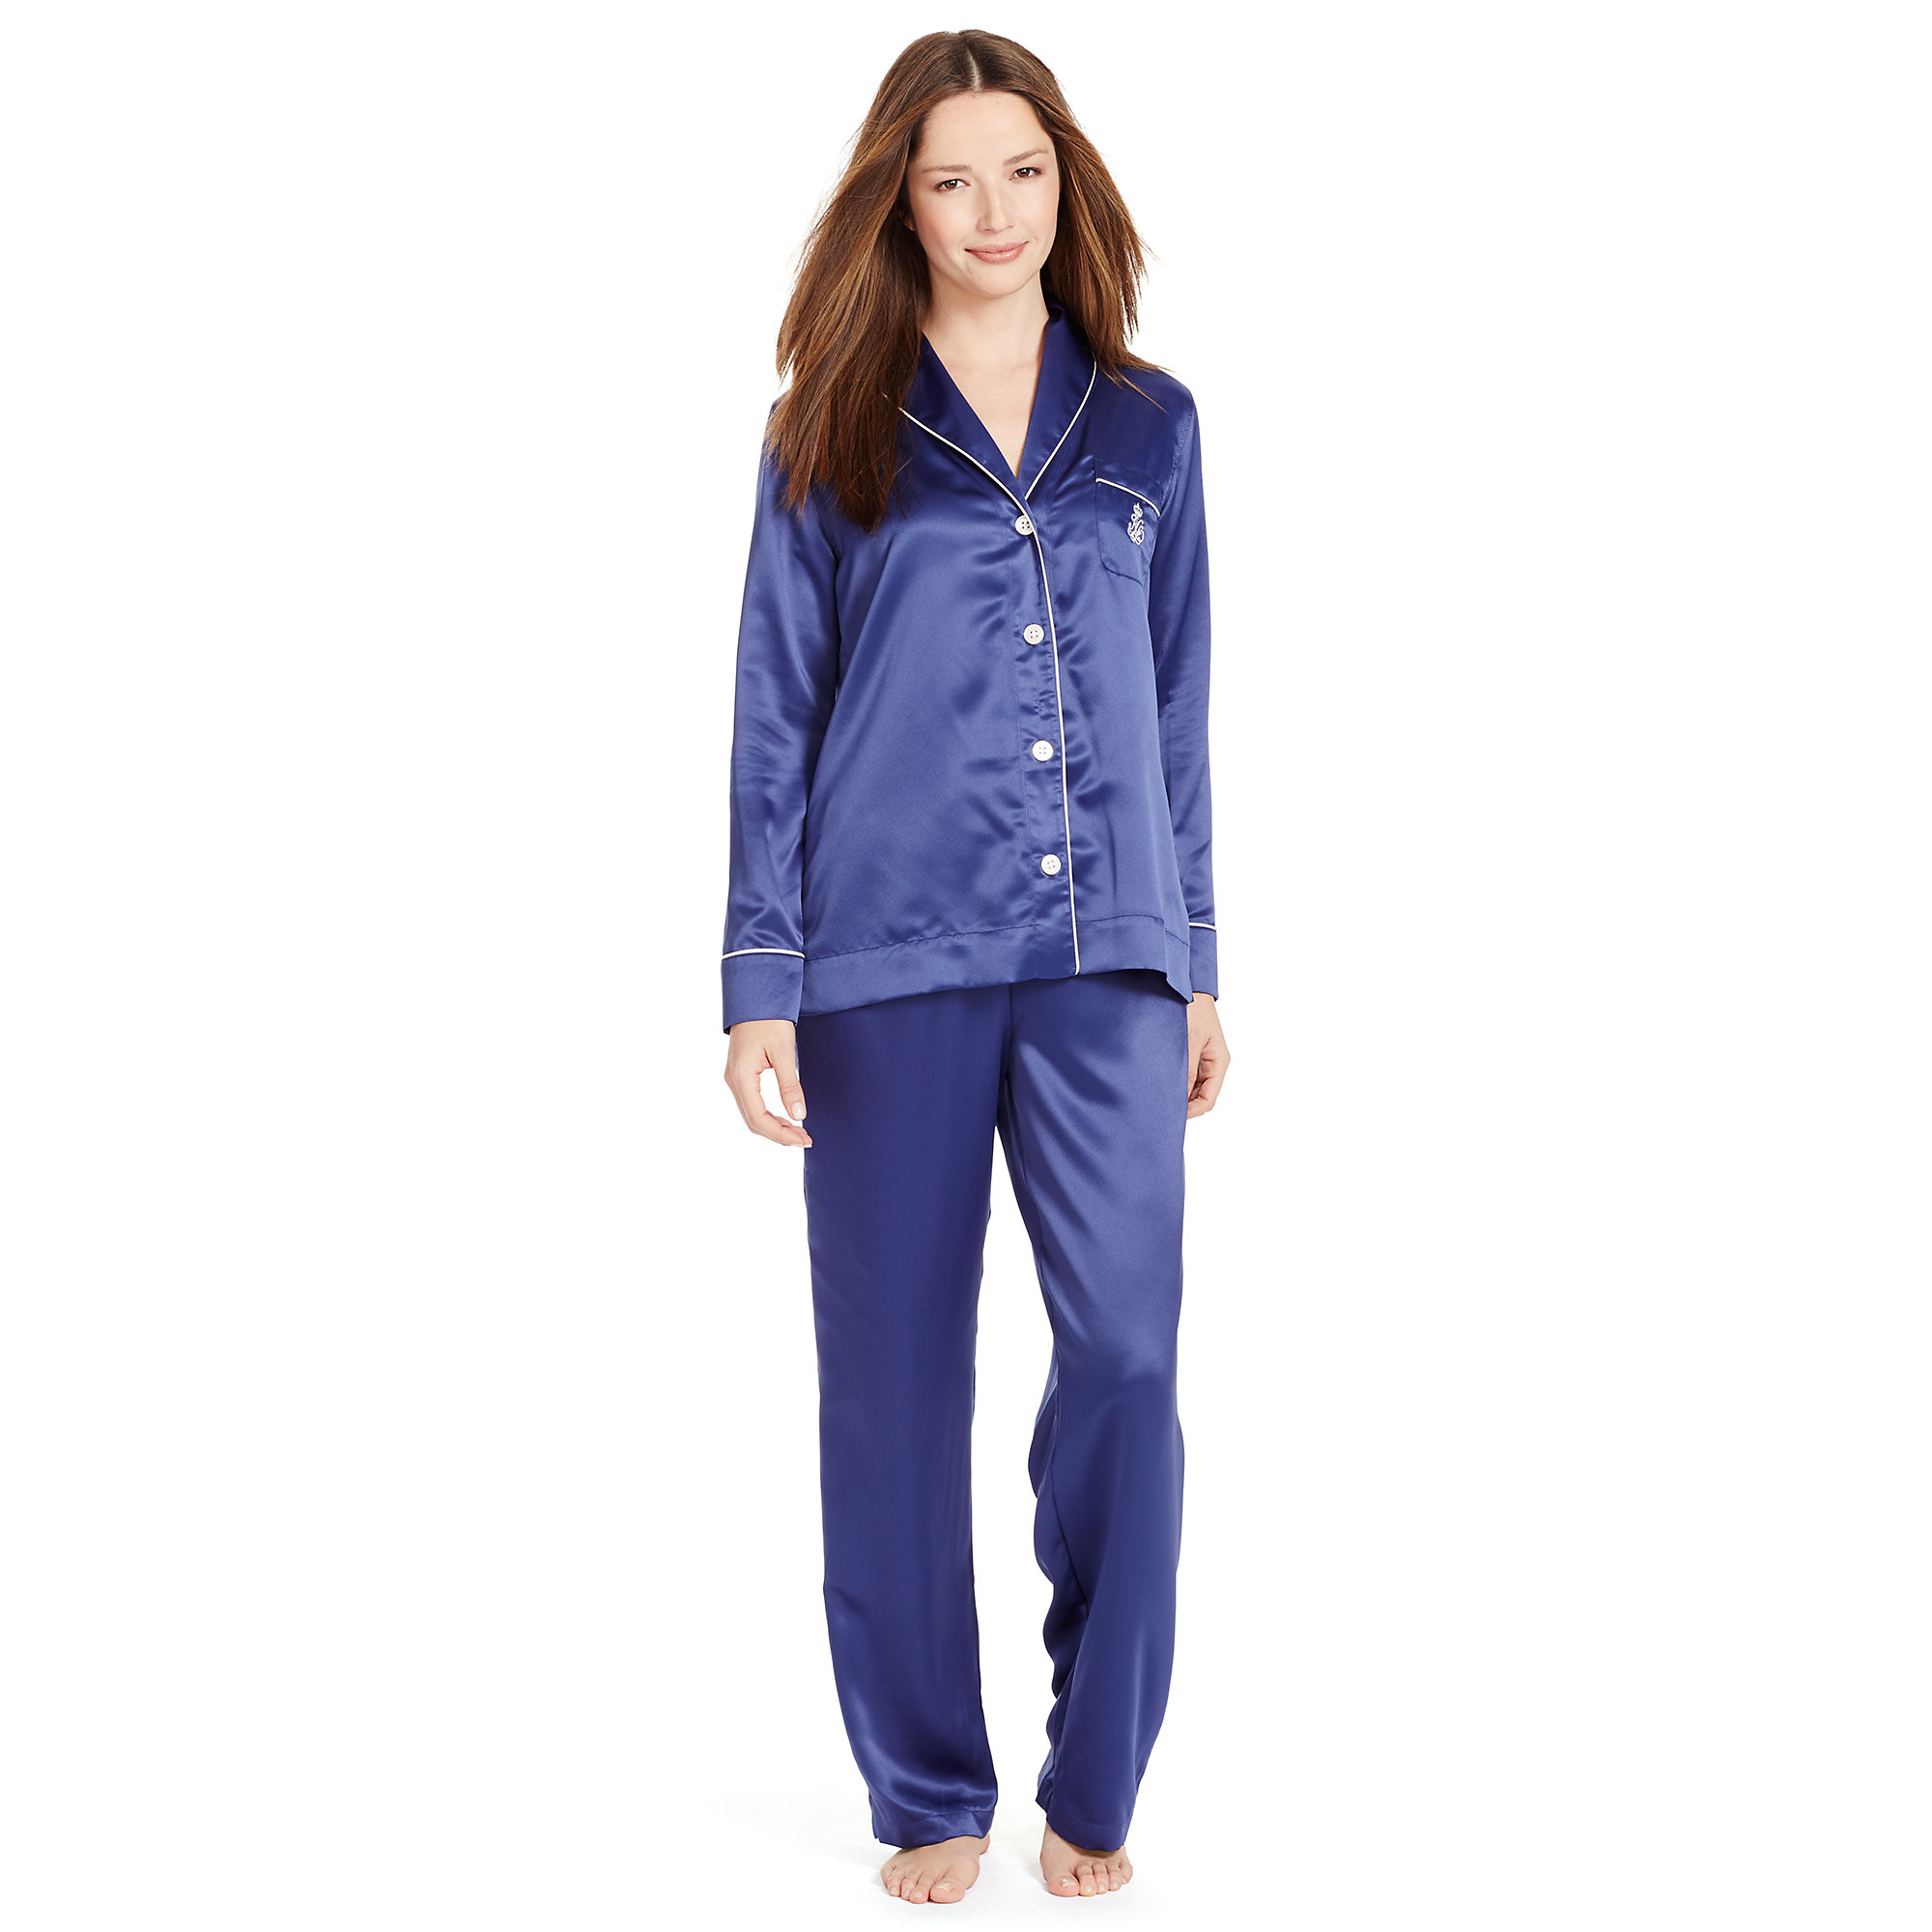 Ralph Lauren Pajamas For Women - Prism Contractors & Engineers